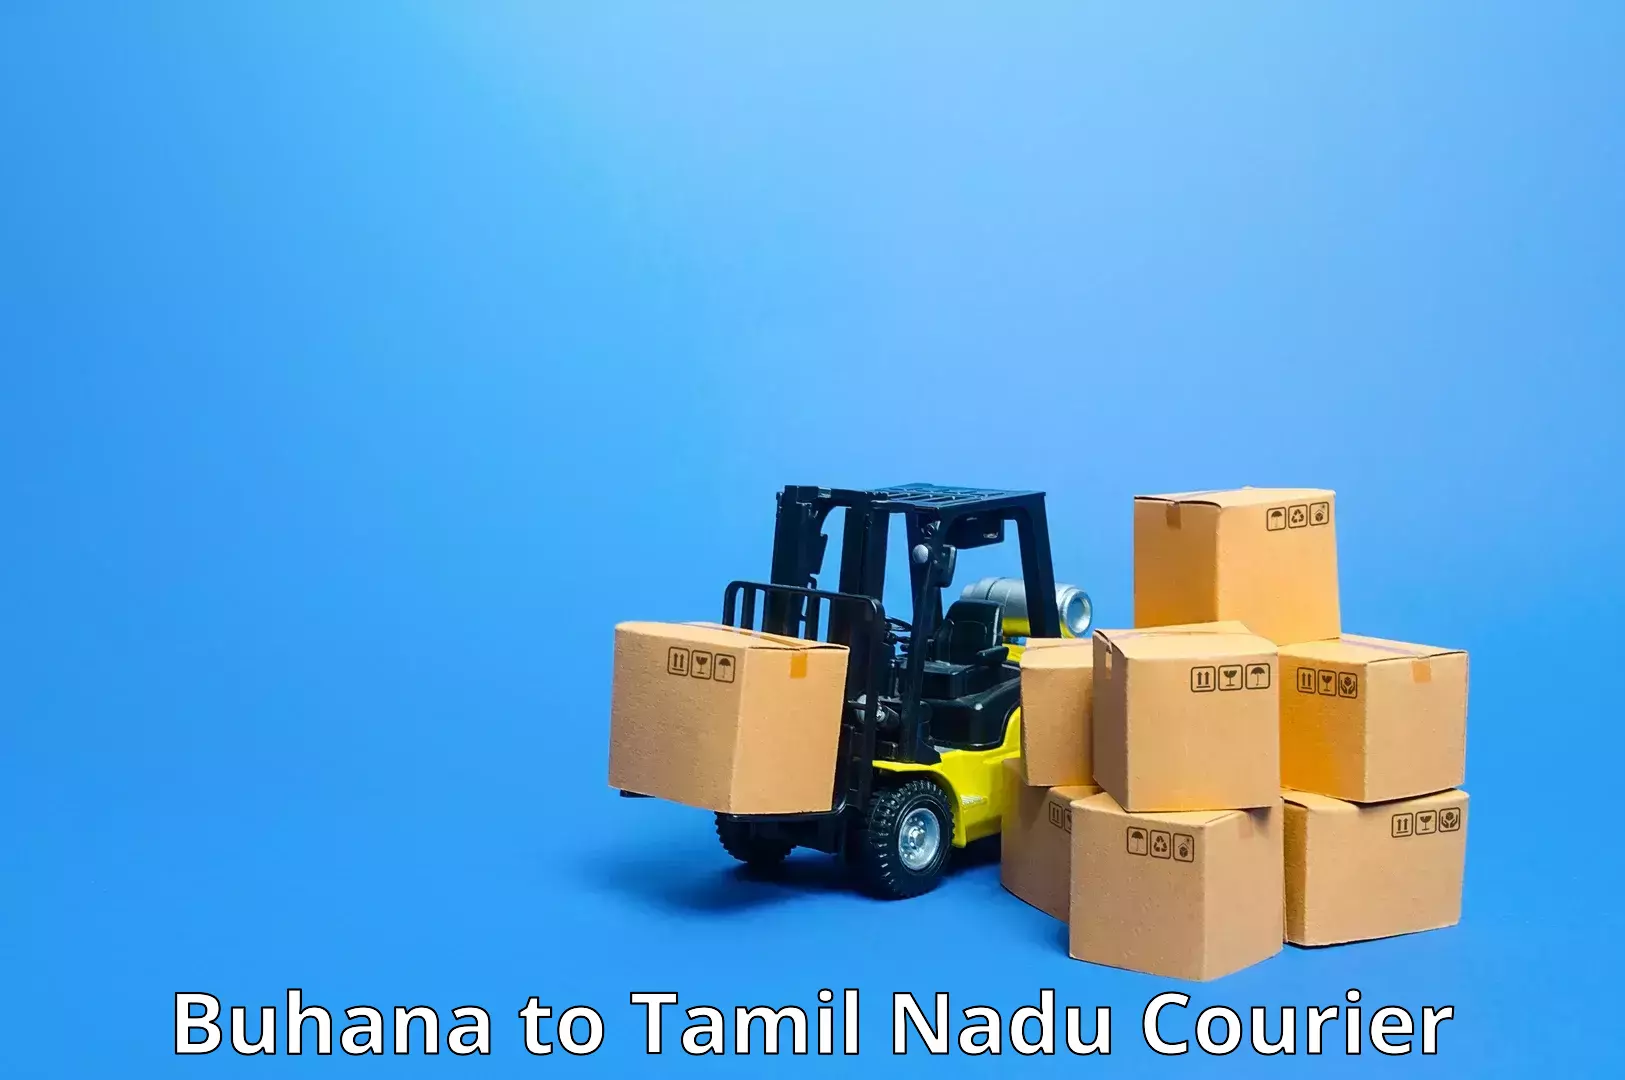 On-demand courier Buhana to Thirukkattupalli